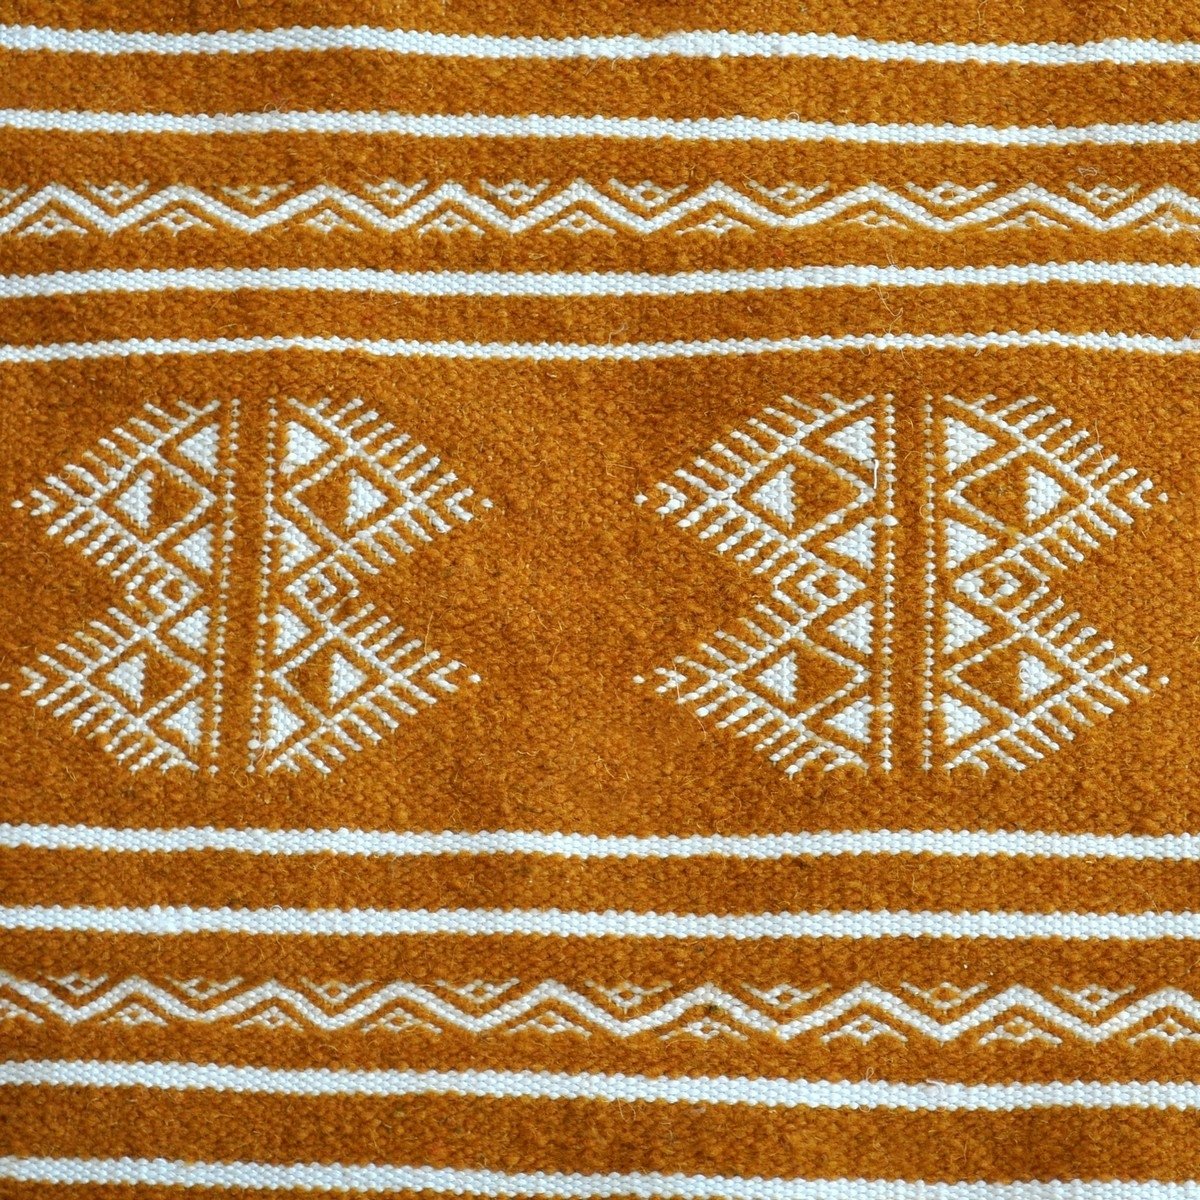 Berber tapijt Tapijt Kilim Idleb 60x115 Jeel (Handgeweven, Wol, Tunesië) Tunesisch kilimdeken, Marokkaanse stijl. Rechthoekig wo